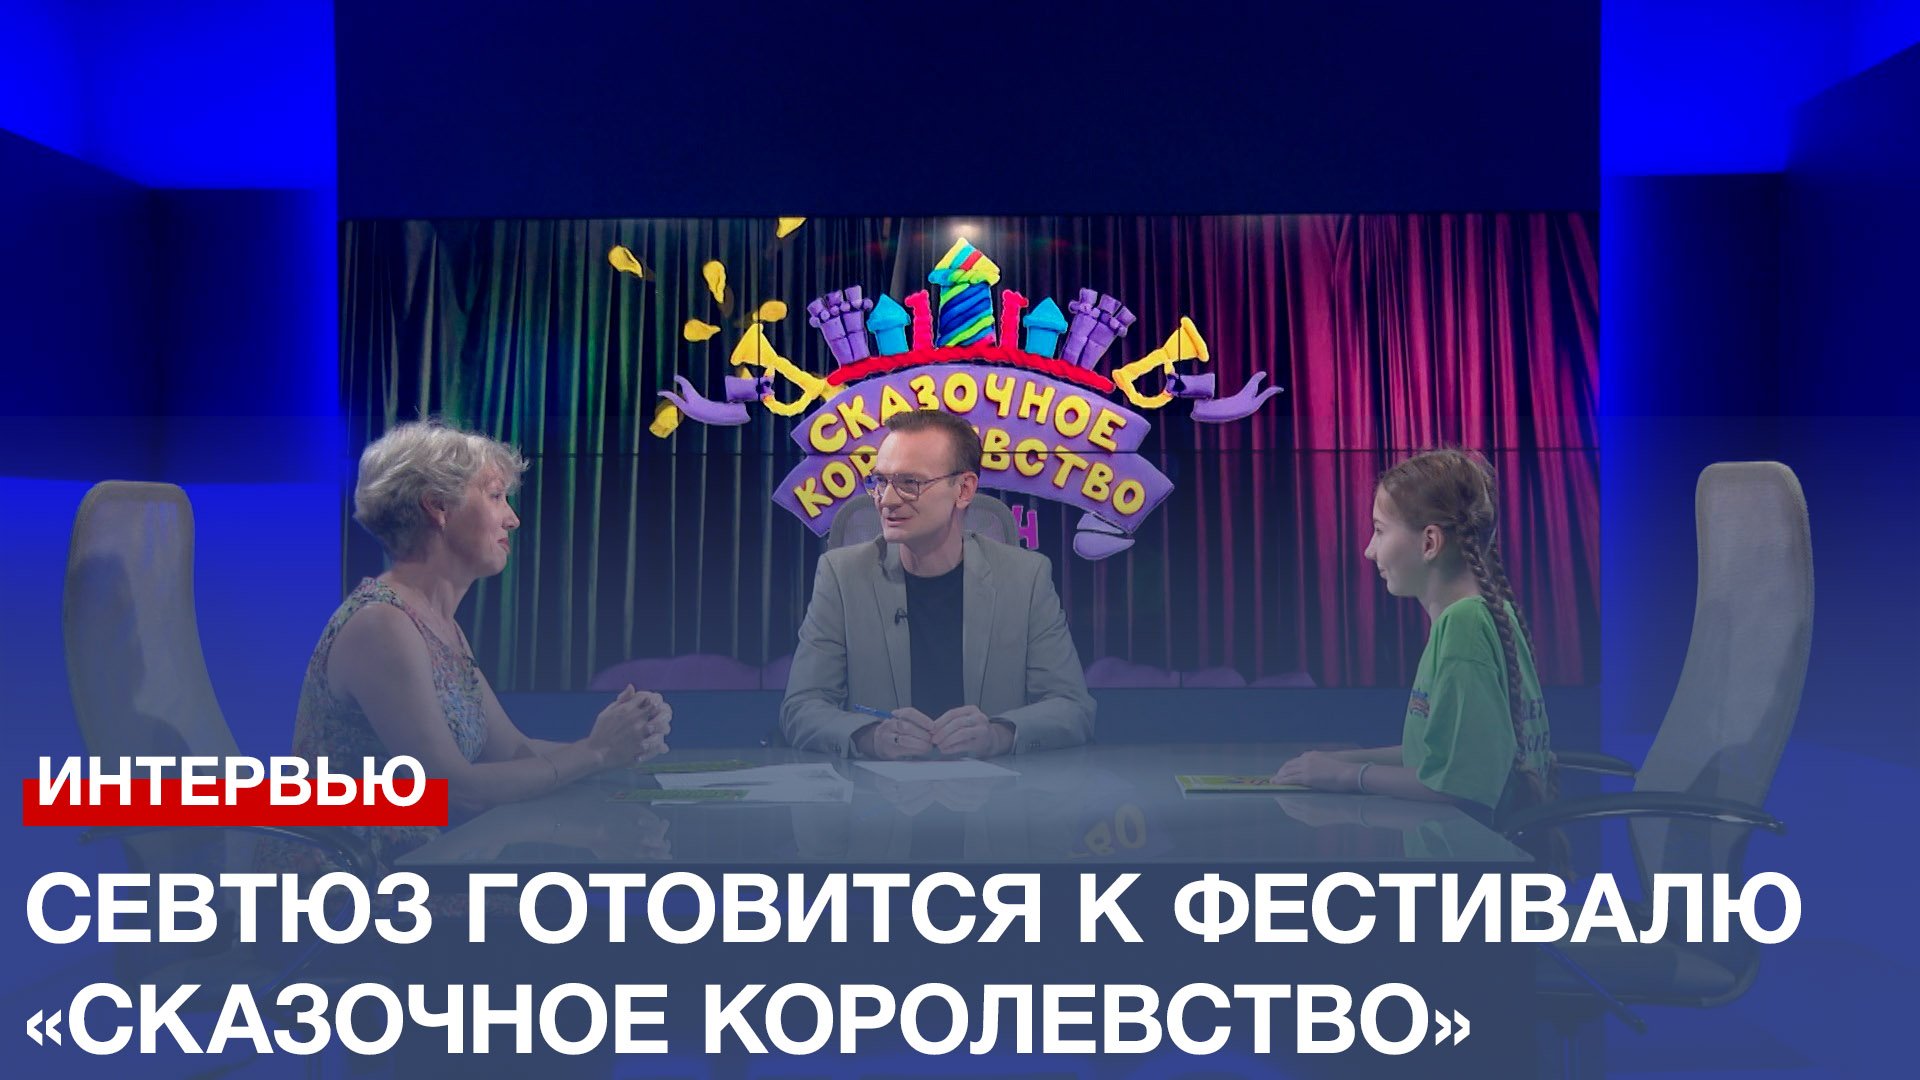 СевТЮЗ готовится к восьмому Всероссийскому фестивалю «Сказочное королевство»